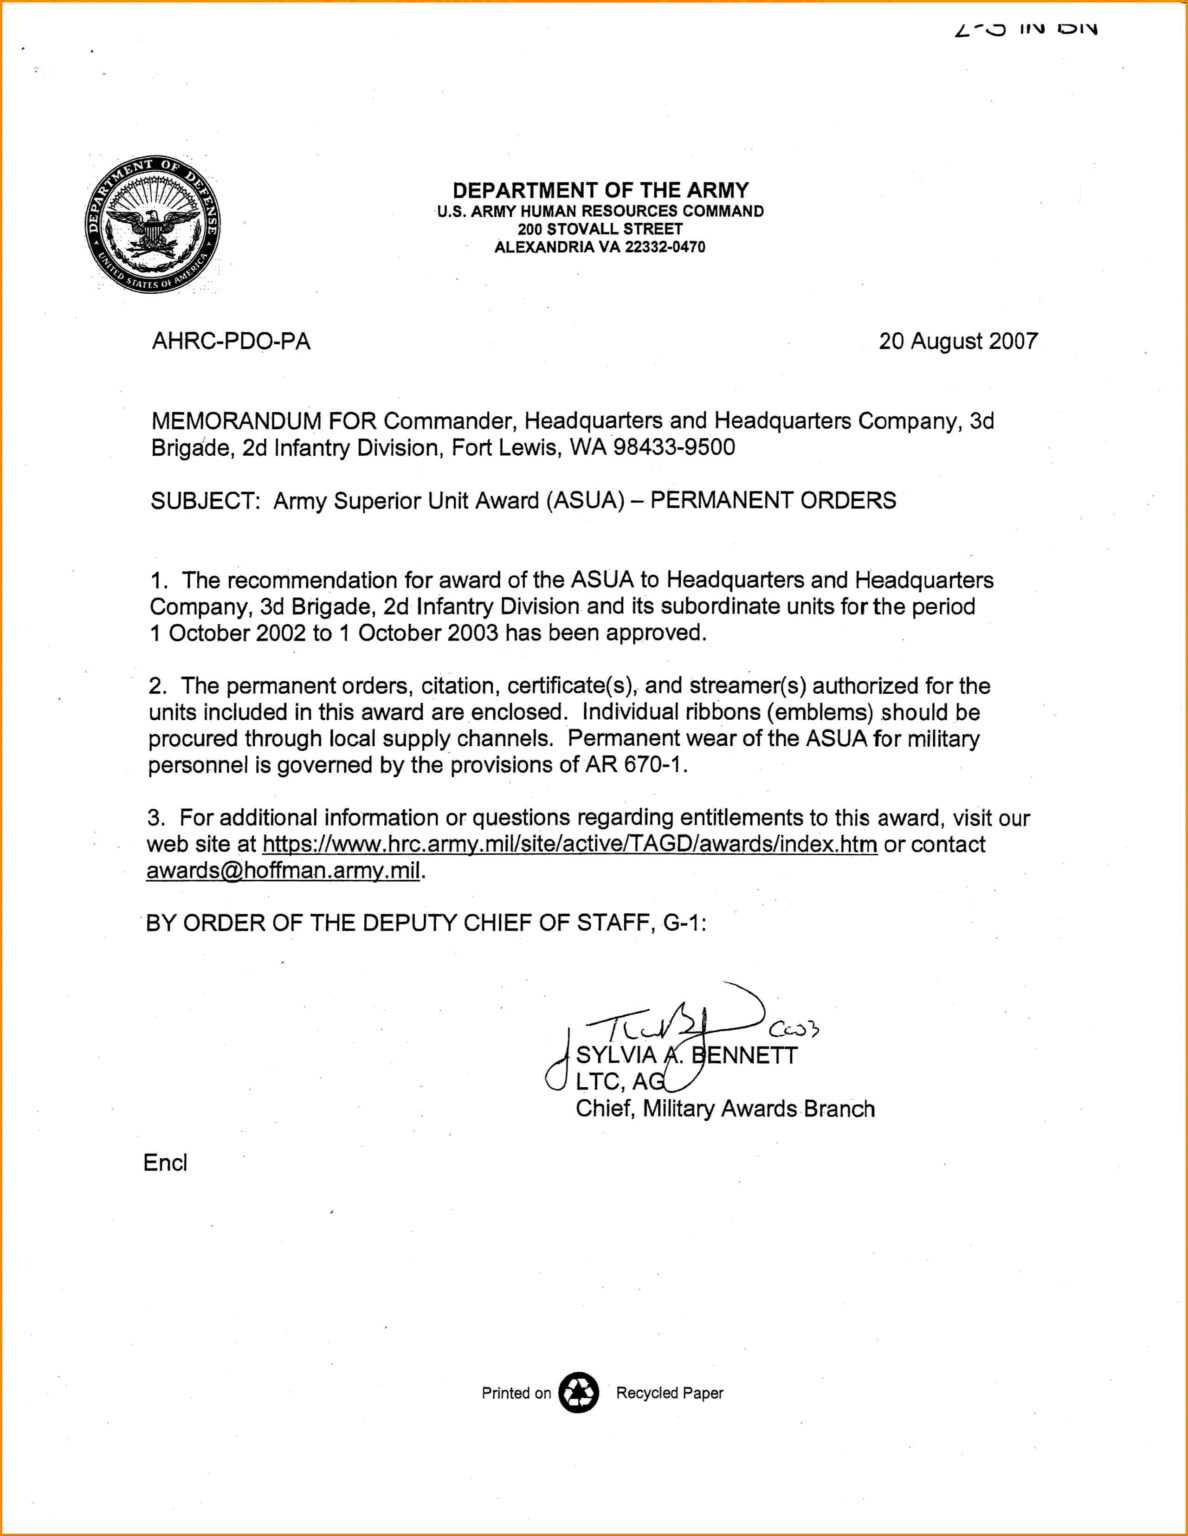 18 Images Of U.s. Army Memorandum Template Word Inside Army Memorandum